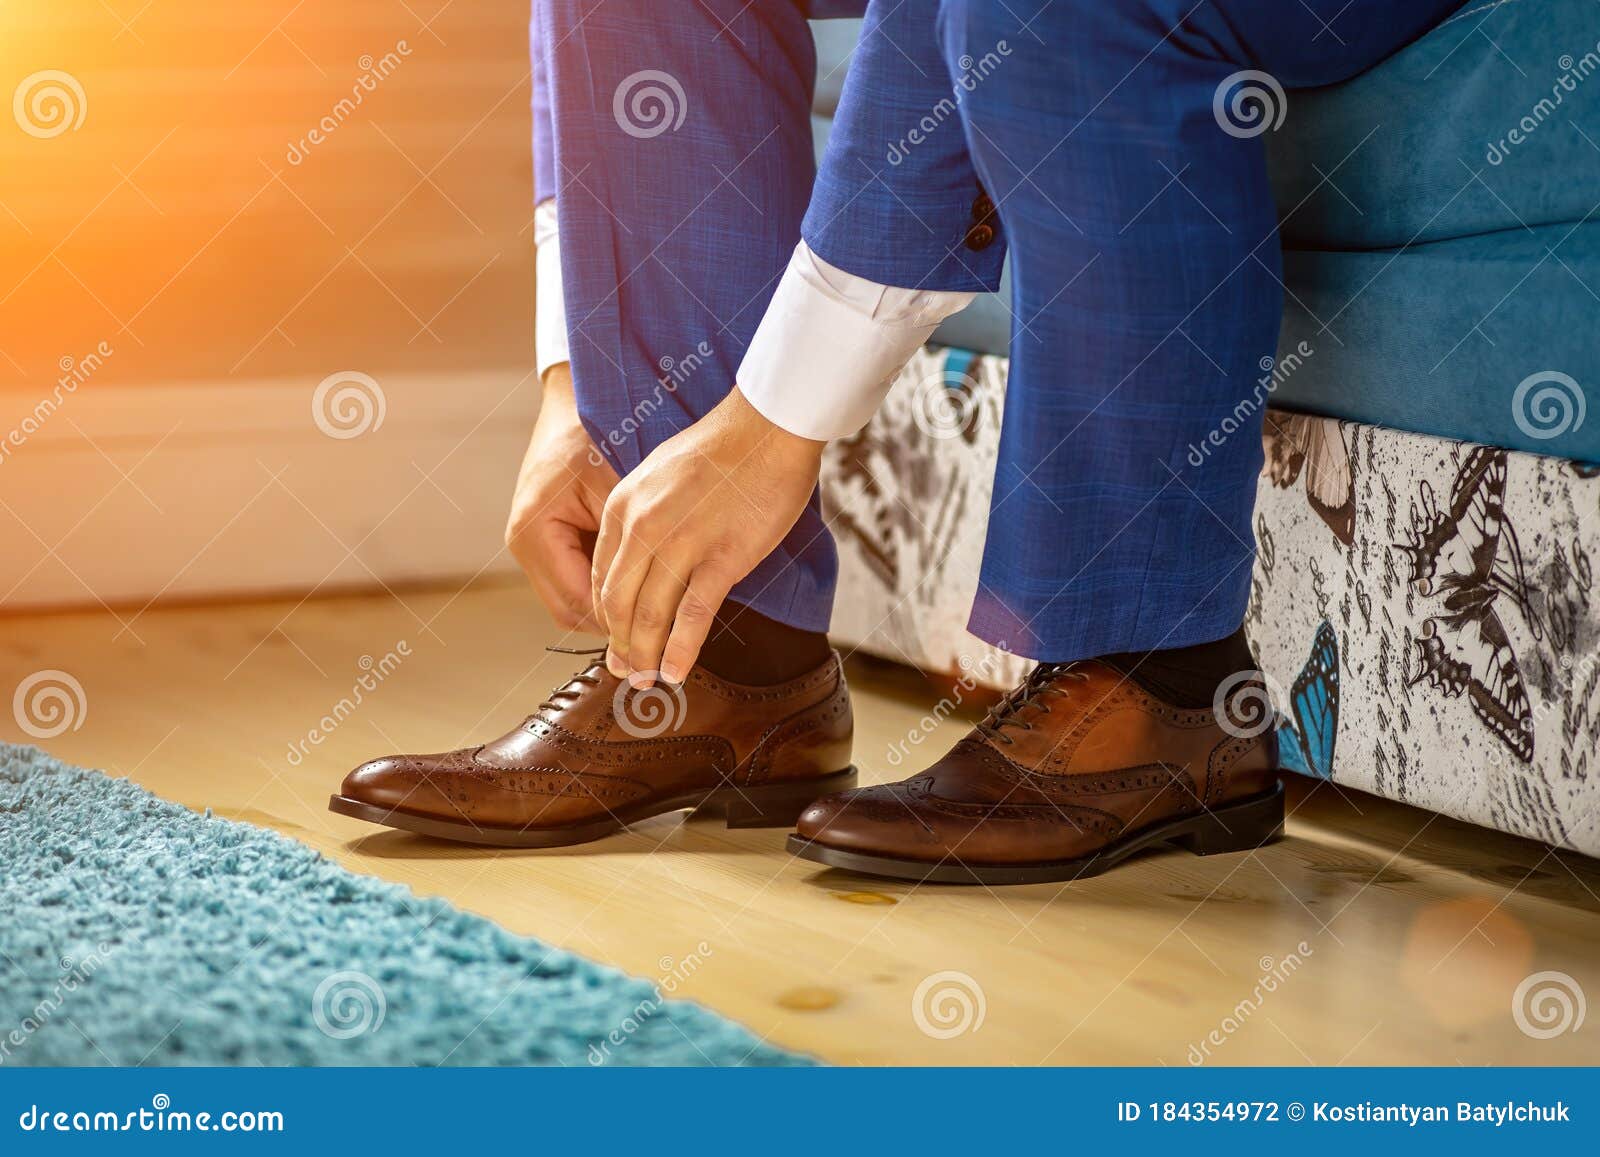 Un Hombre Ata Sus Cordones En Sus Zapatos Marrones En La Traje Azul Y Zapatos De Charol Foto de archivo - Imagen de detalle: 184354972